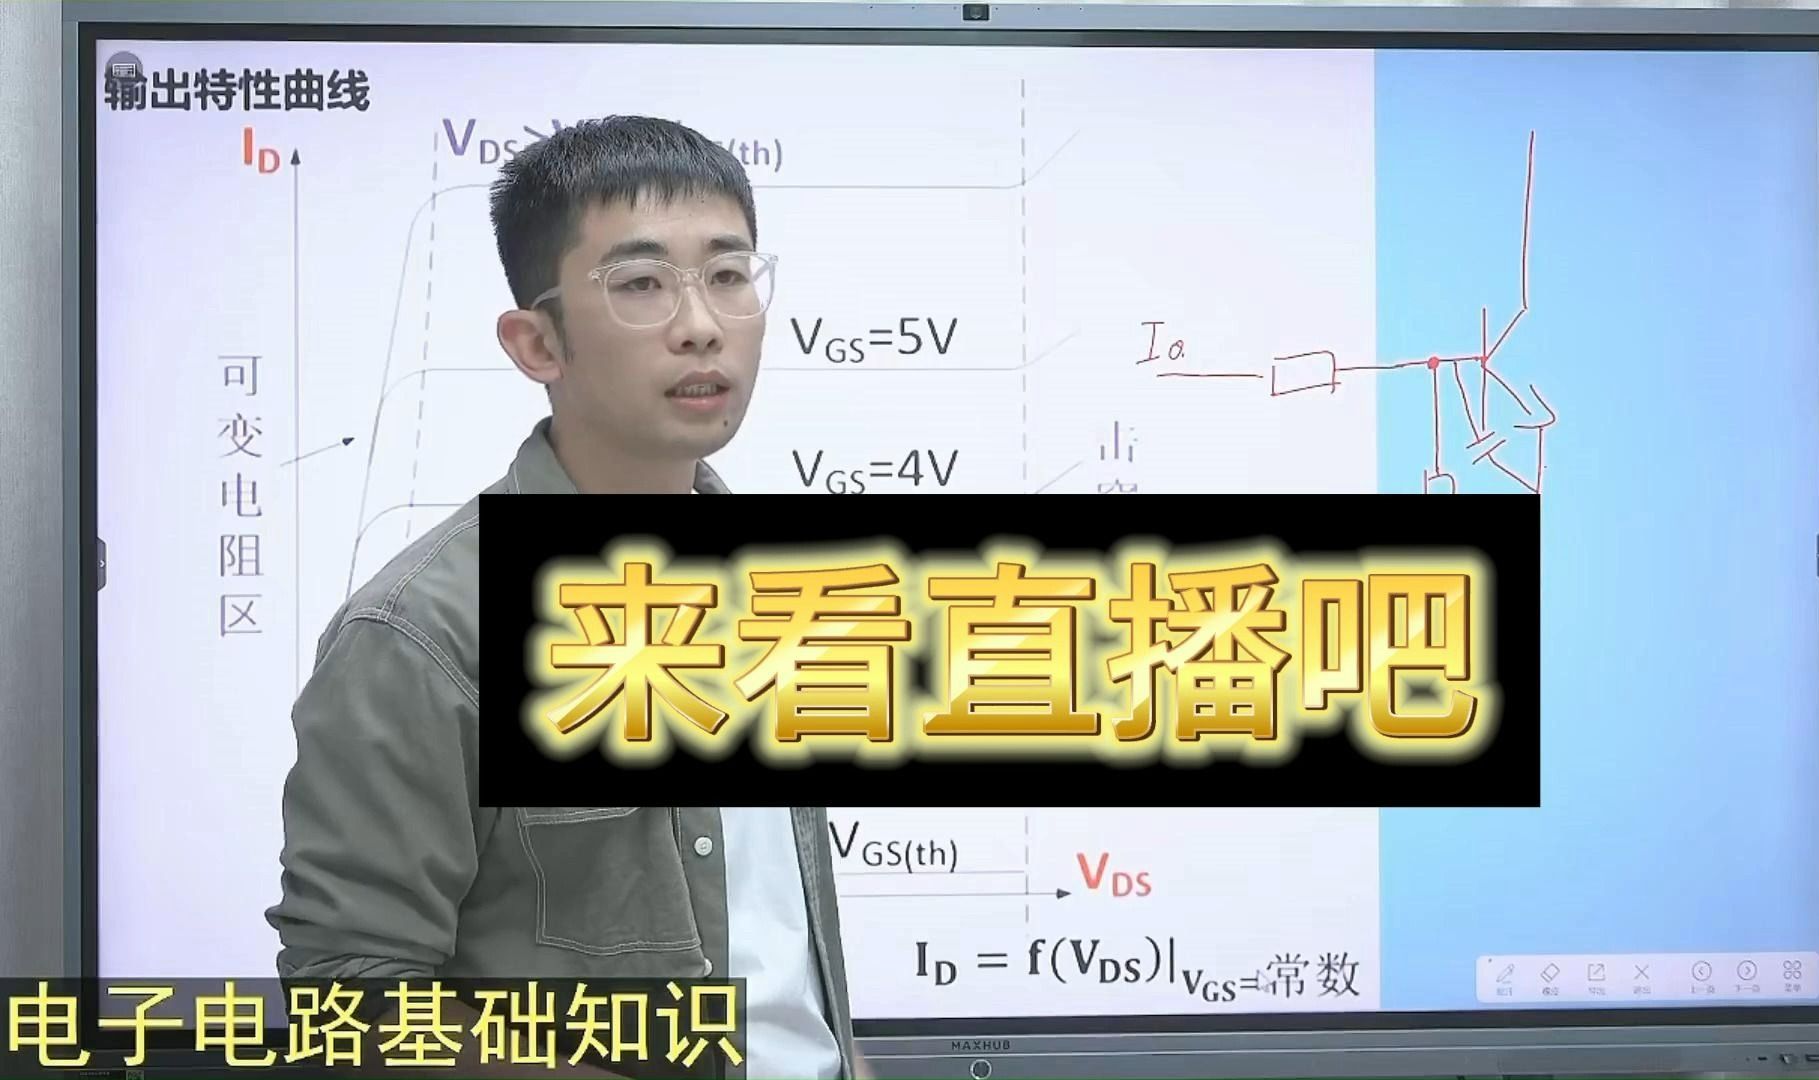 姜军：今天给大家讲一个非常经典的电路图，看看你学会了多少？